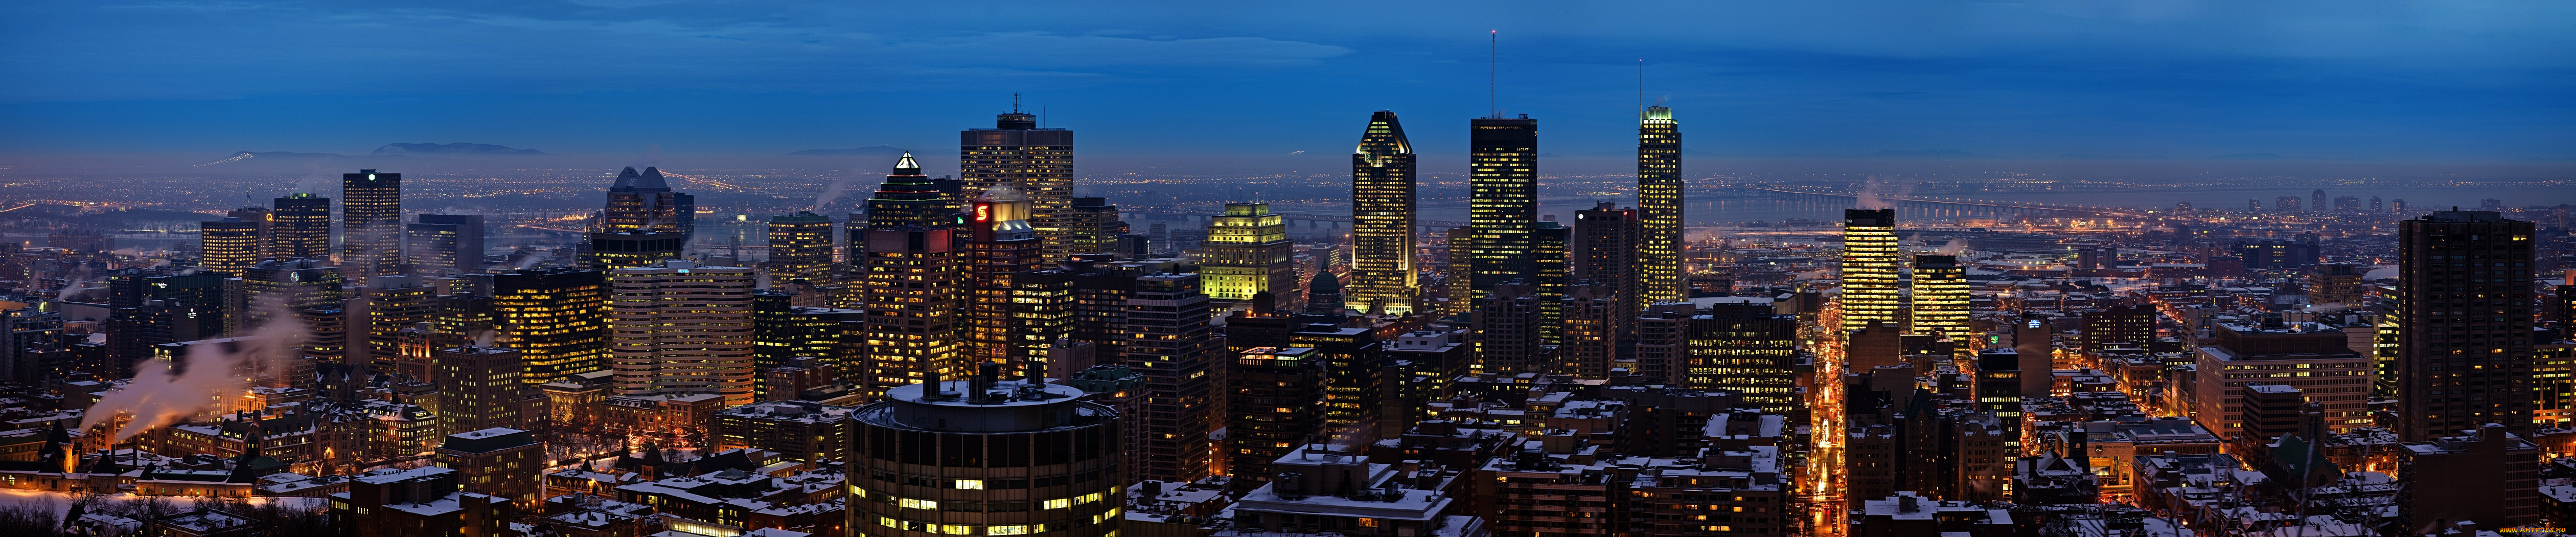 montreal, города, огни, ночного, монреаль, канада, ночь, панорама